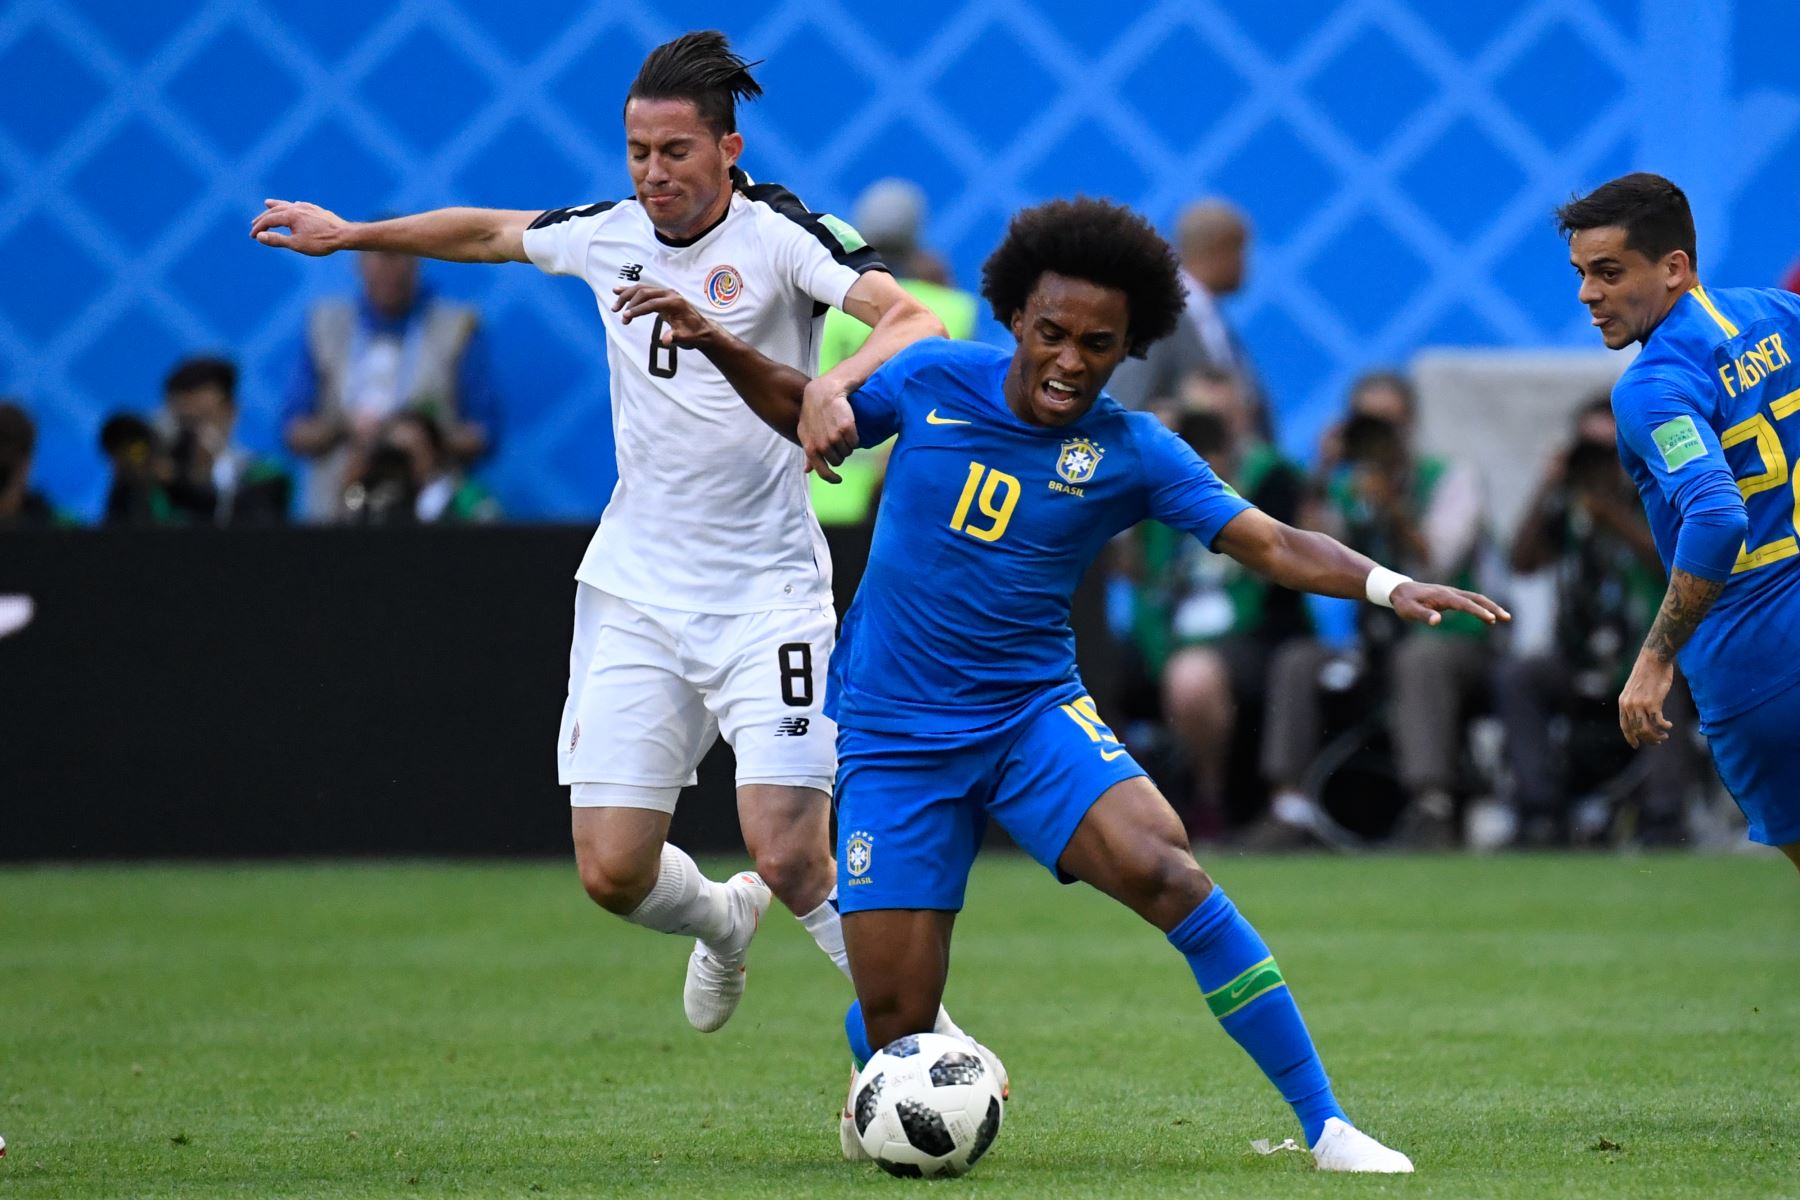 El defensor de Costa Rica Bryan Oviedo (L) marca el delantero brasileño Willian (C) durante el partido de fútbol del Grupo E de la Copa Mundial Rusia 2018 entre Brasil y Costa Rica en el Estadio de San Petersburgo el 22 de junio de 2018. / AFP